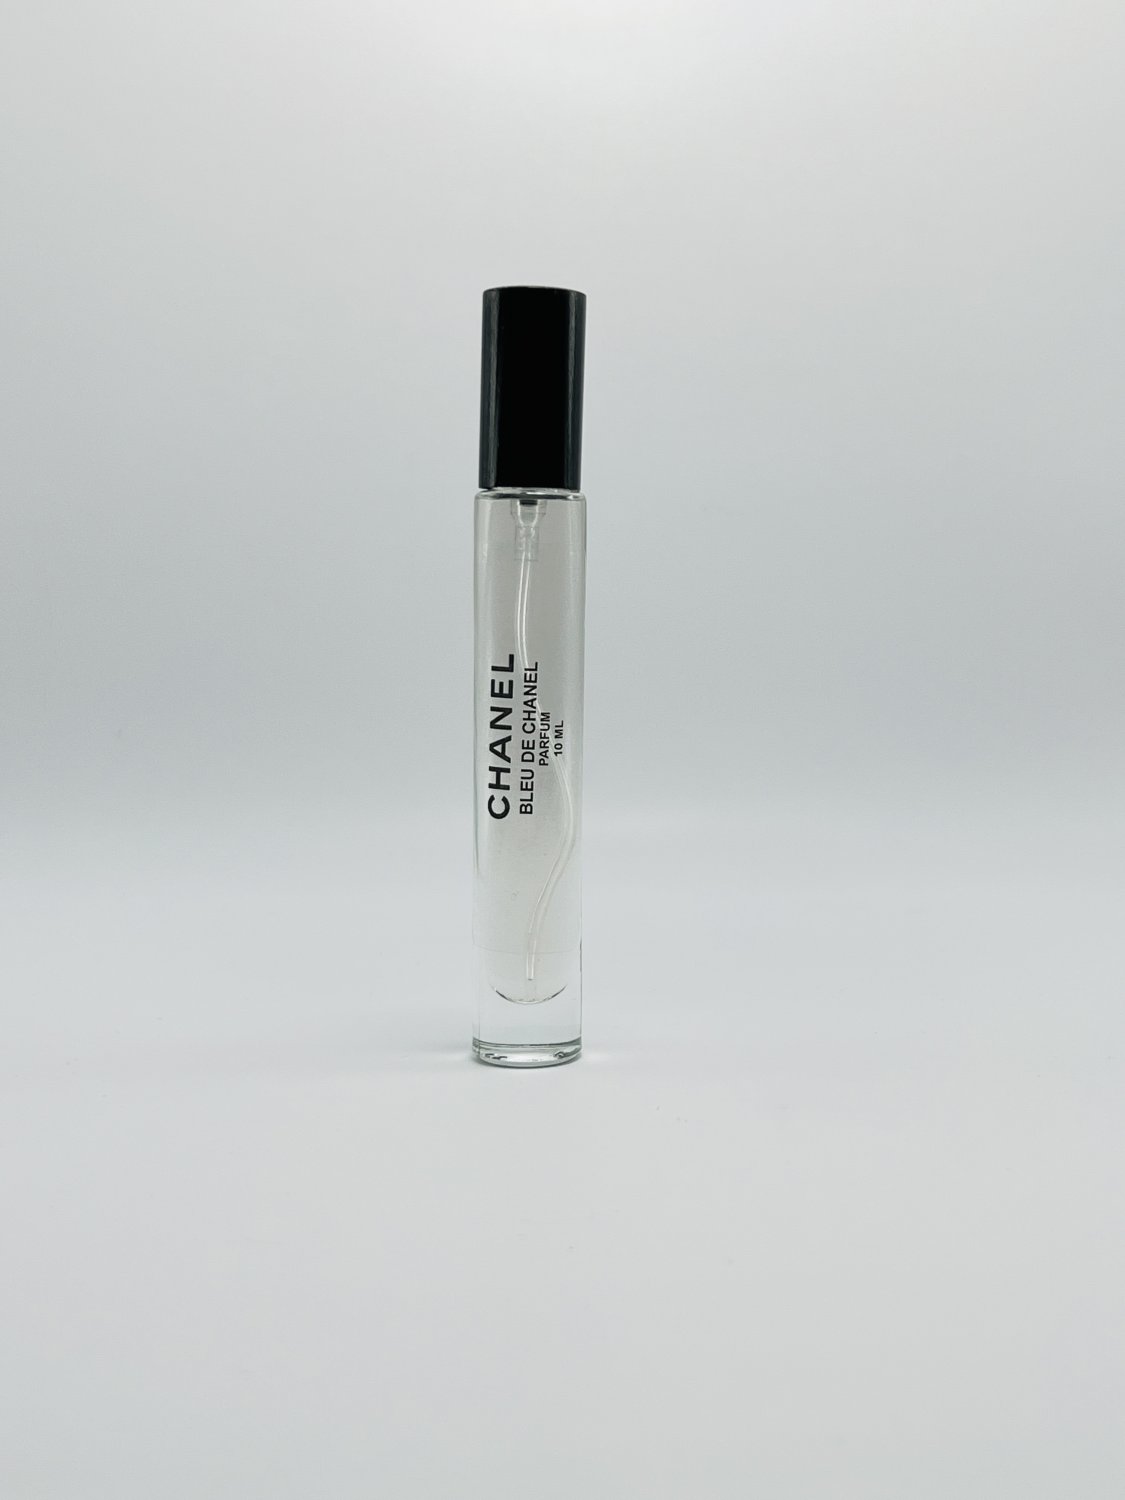 Chanel Men's Bleu De Chanel Parfum Travel Spray 10ml/0..34oz